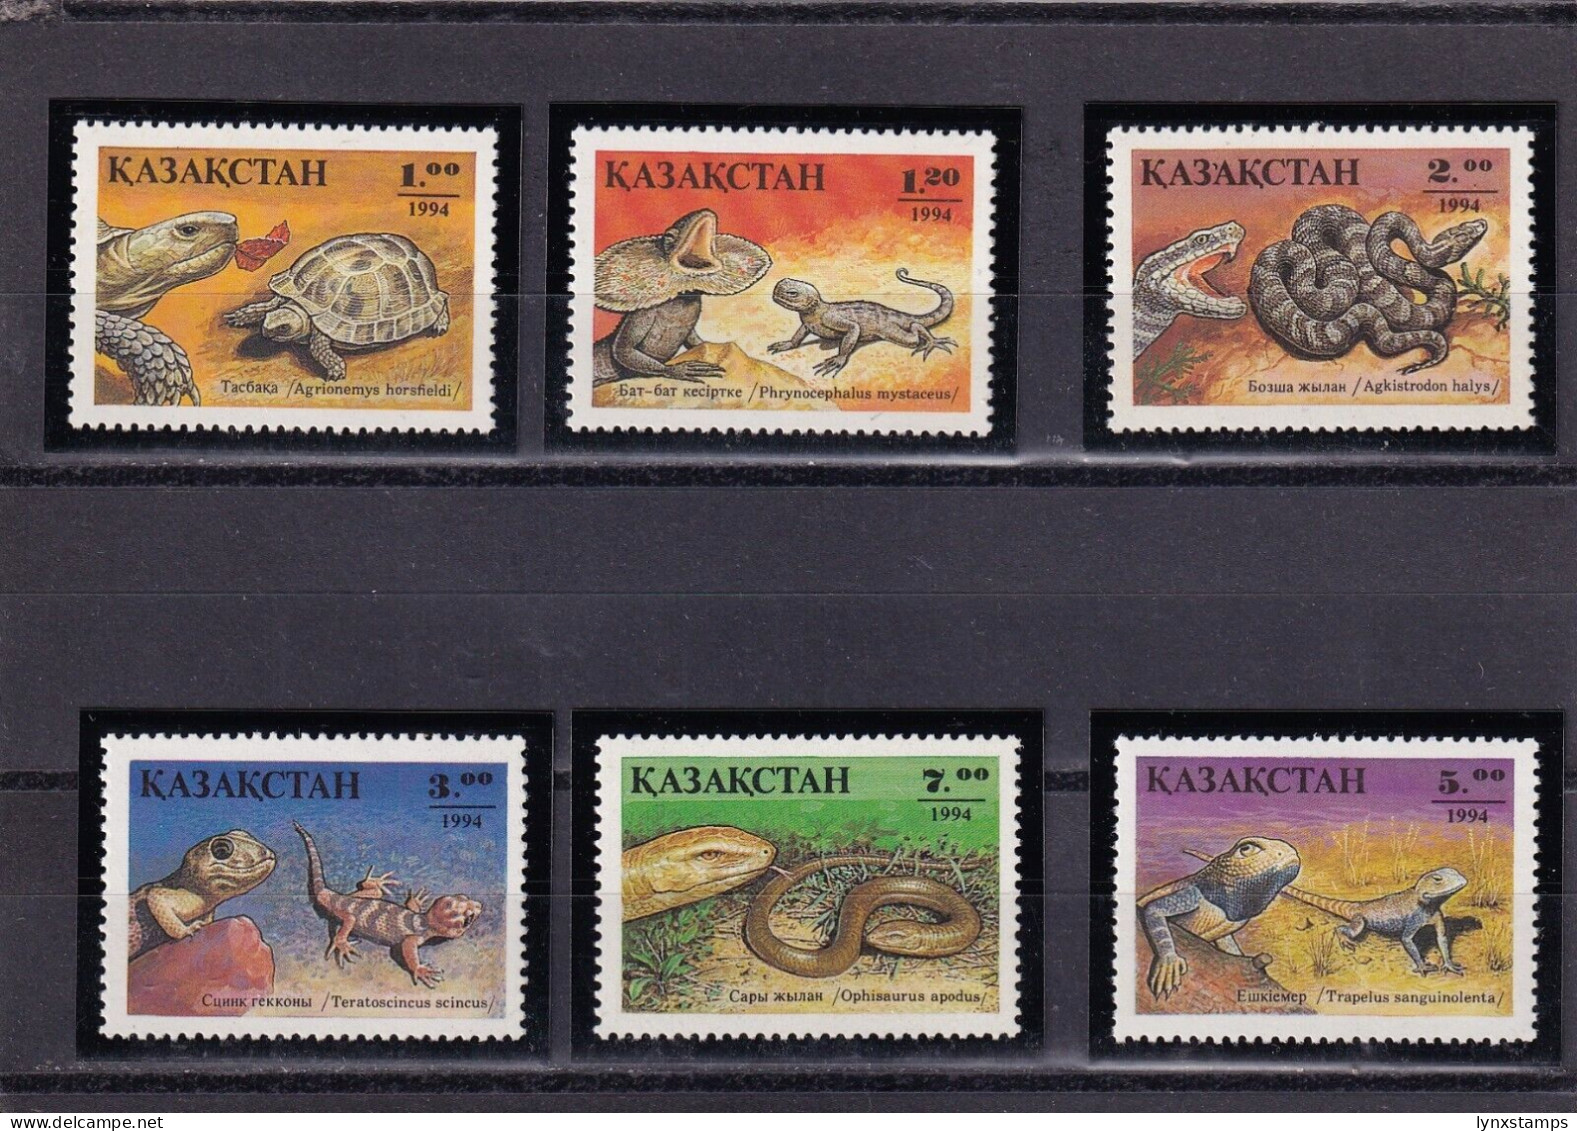 SA01 Kazakhstan 1994 Reptiles Mint Stamps - Kasachstan